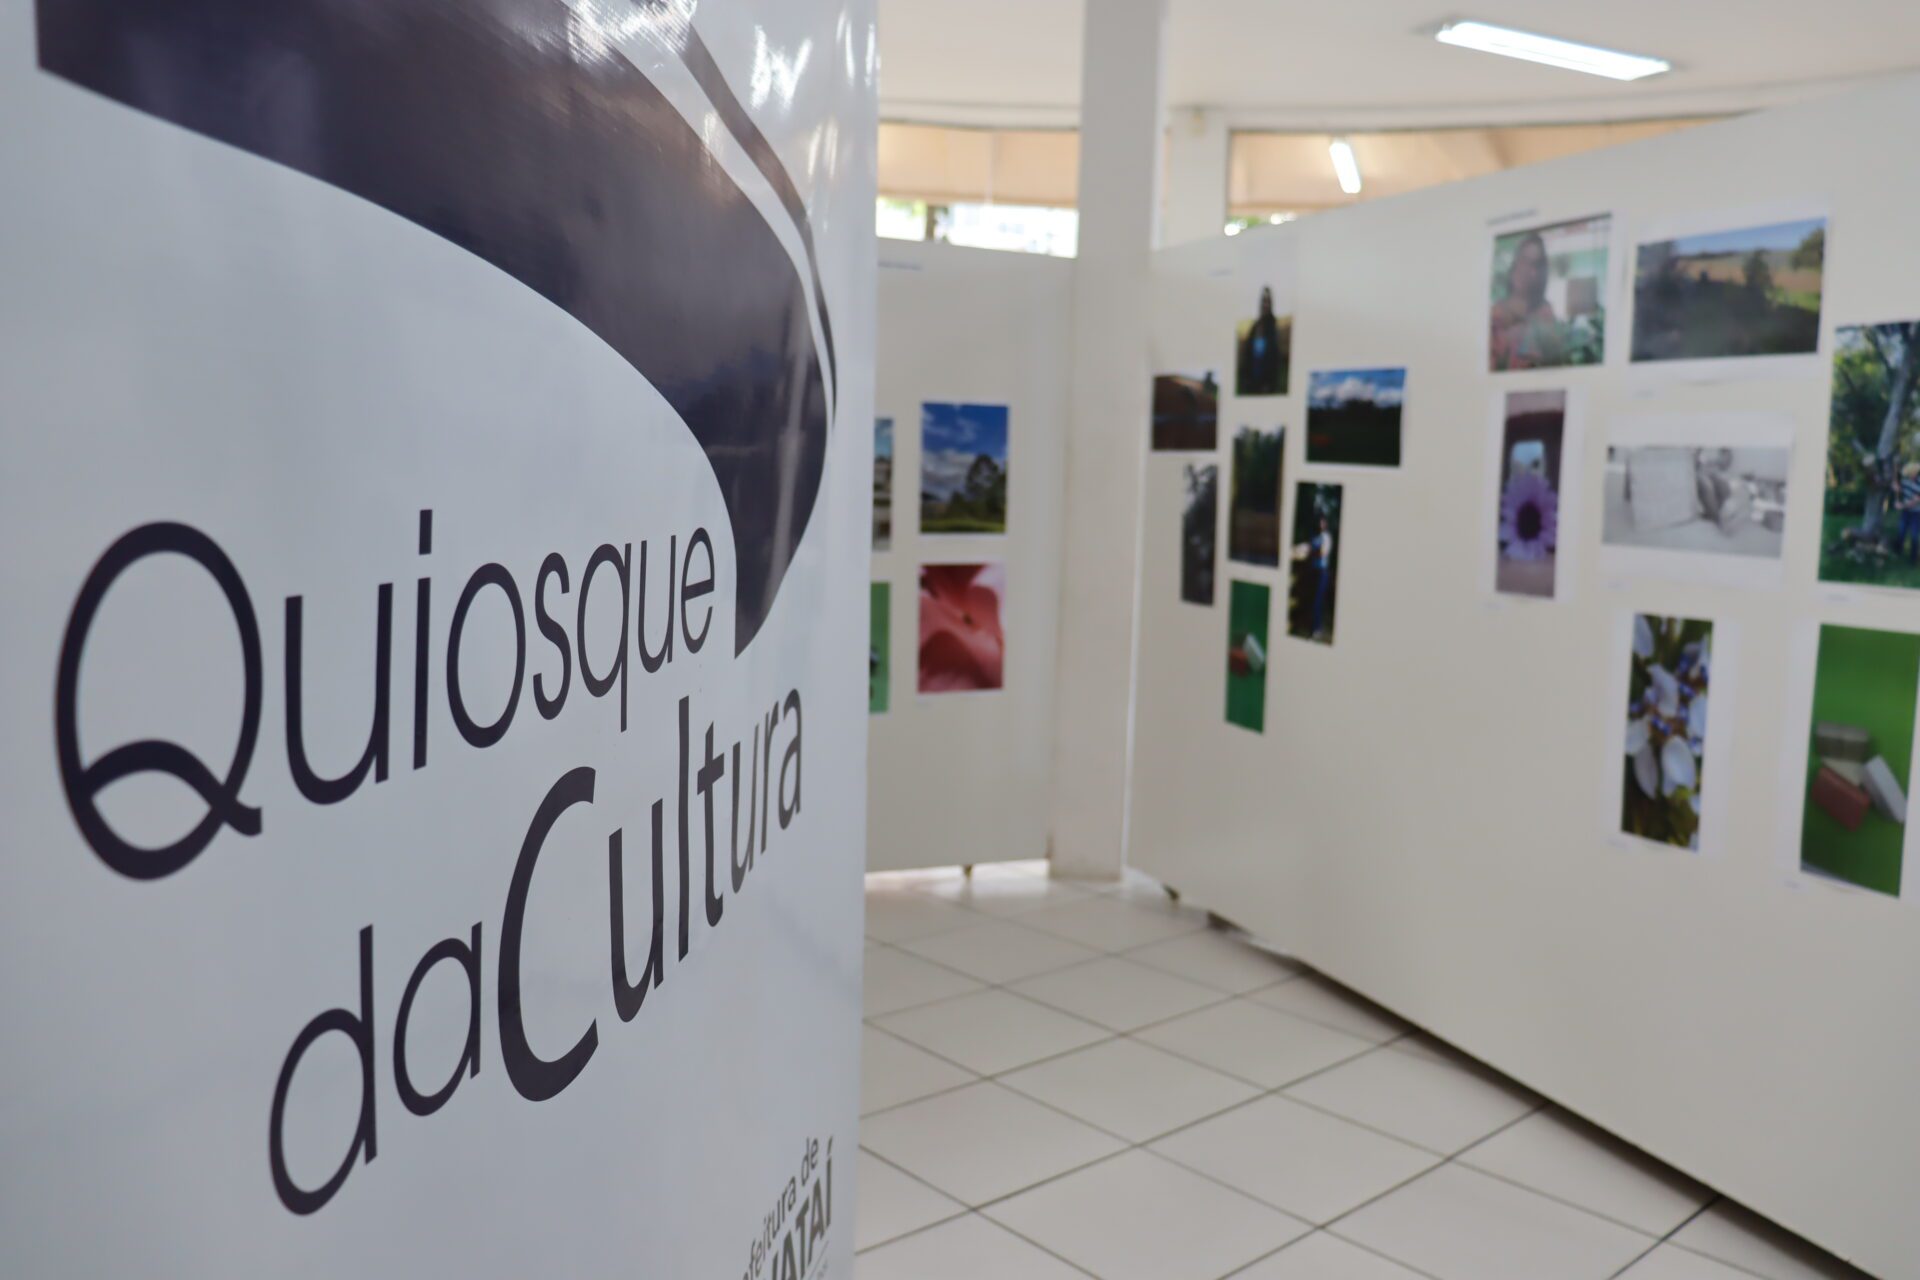 Oficina de Projetos Culturais inicia nesta quinta-feira em Gravataí